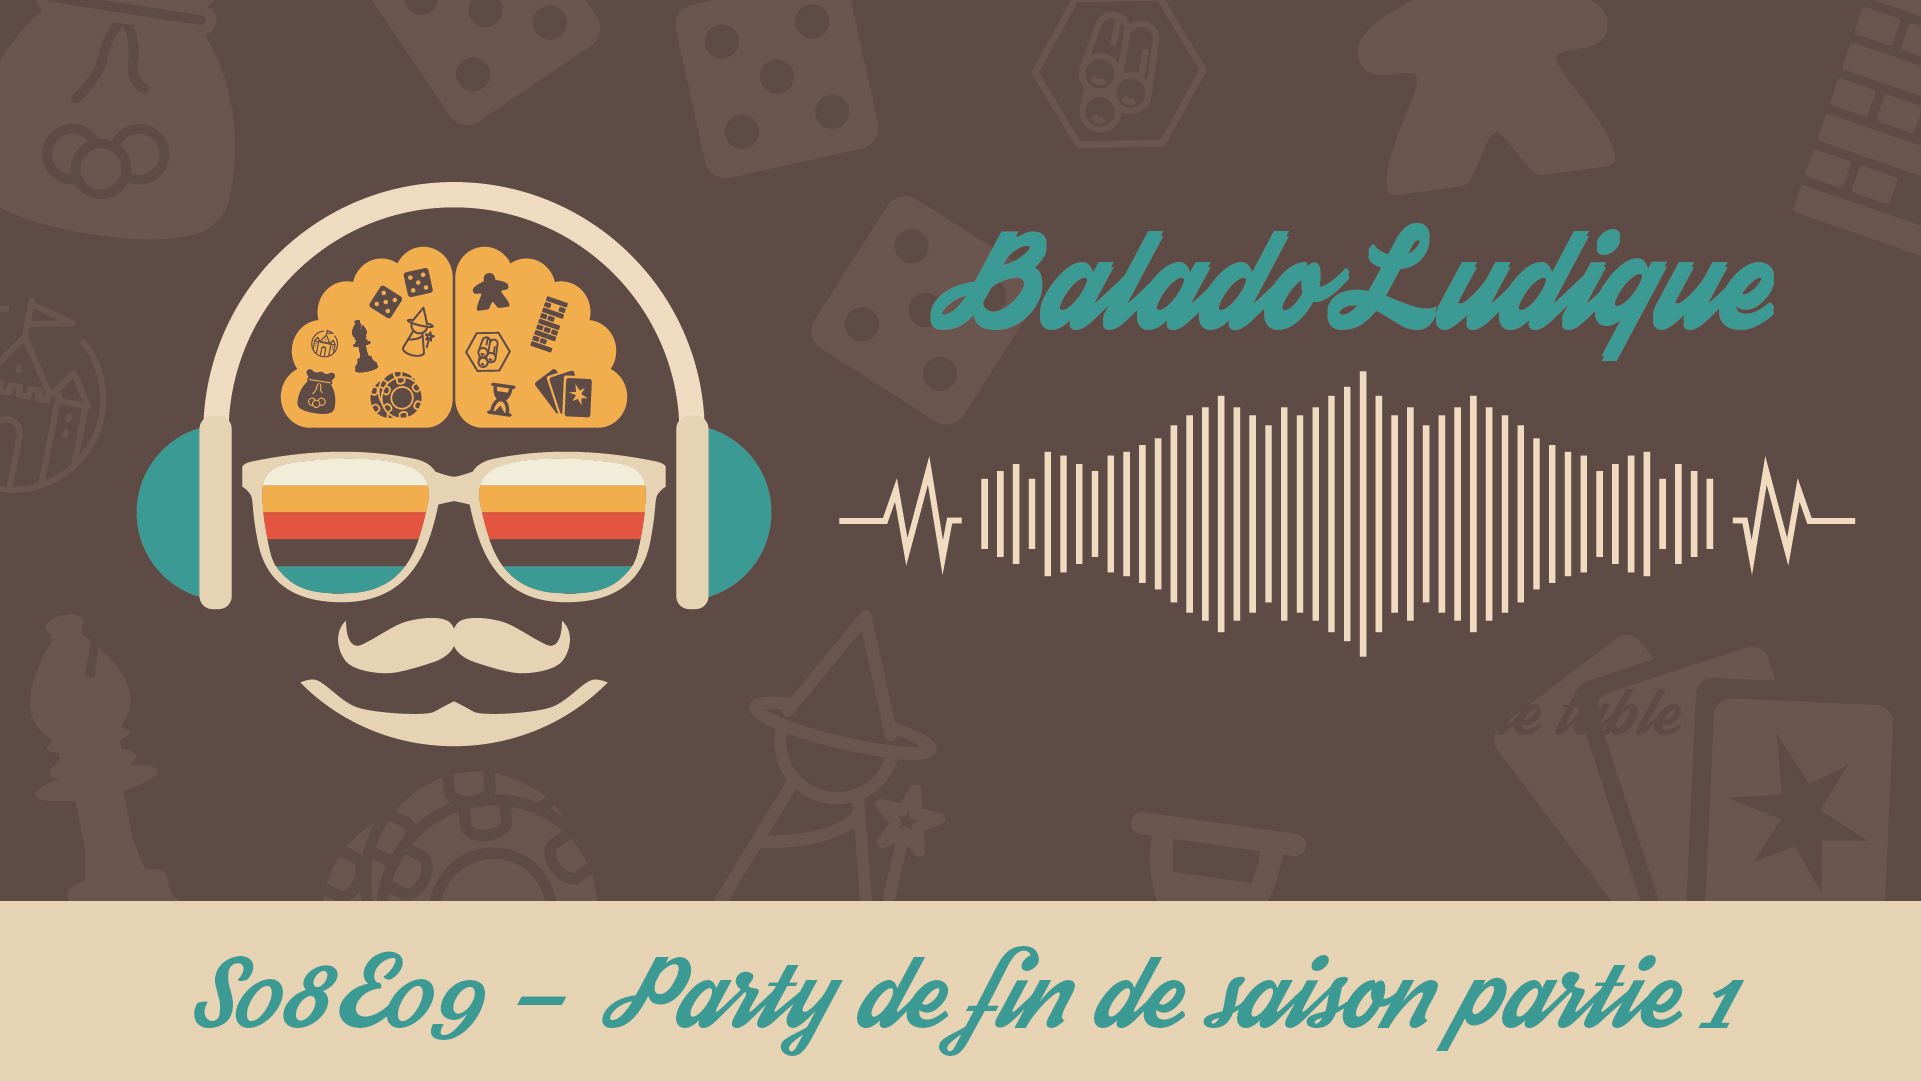 Party fin de saison (partie 1) - BaladoLudique - s08-e09